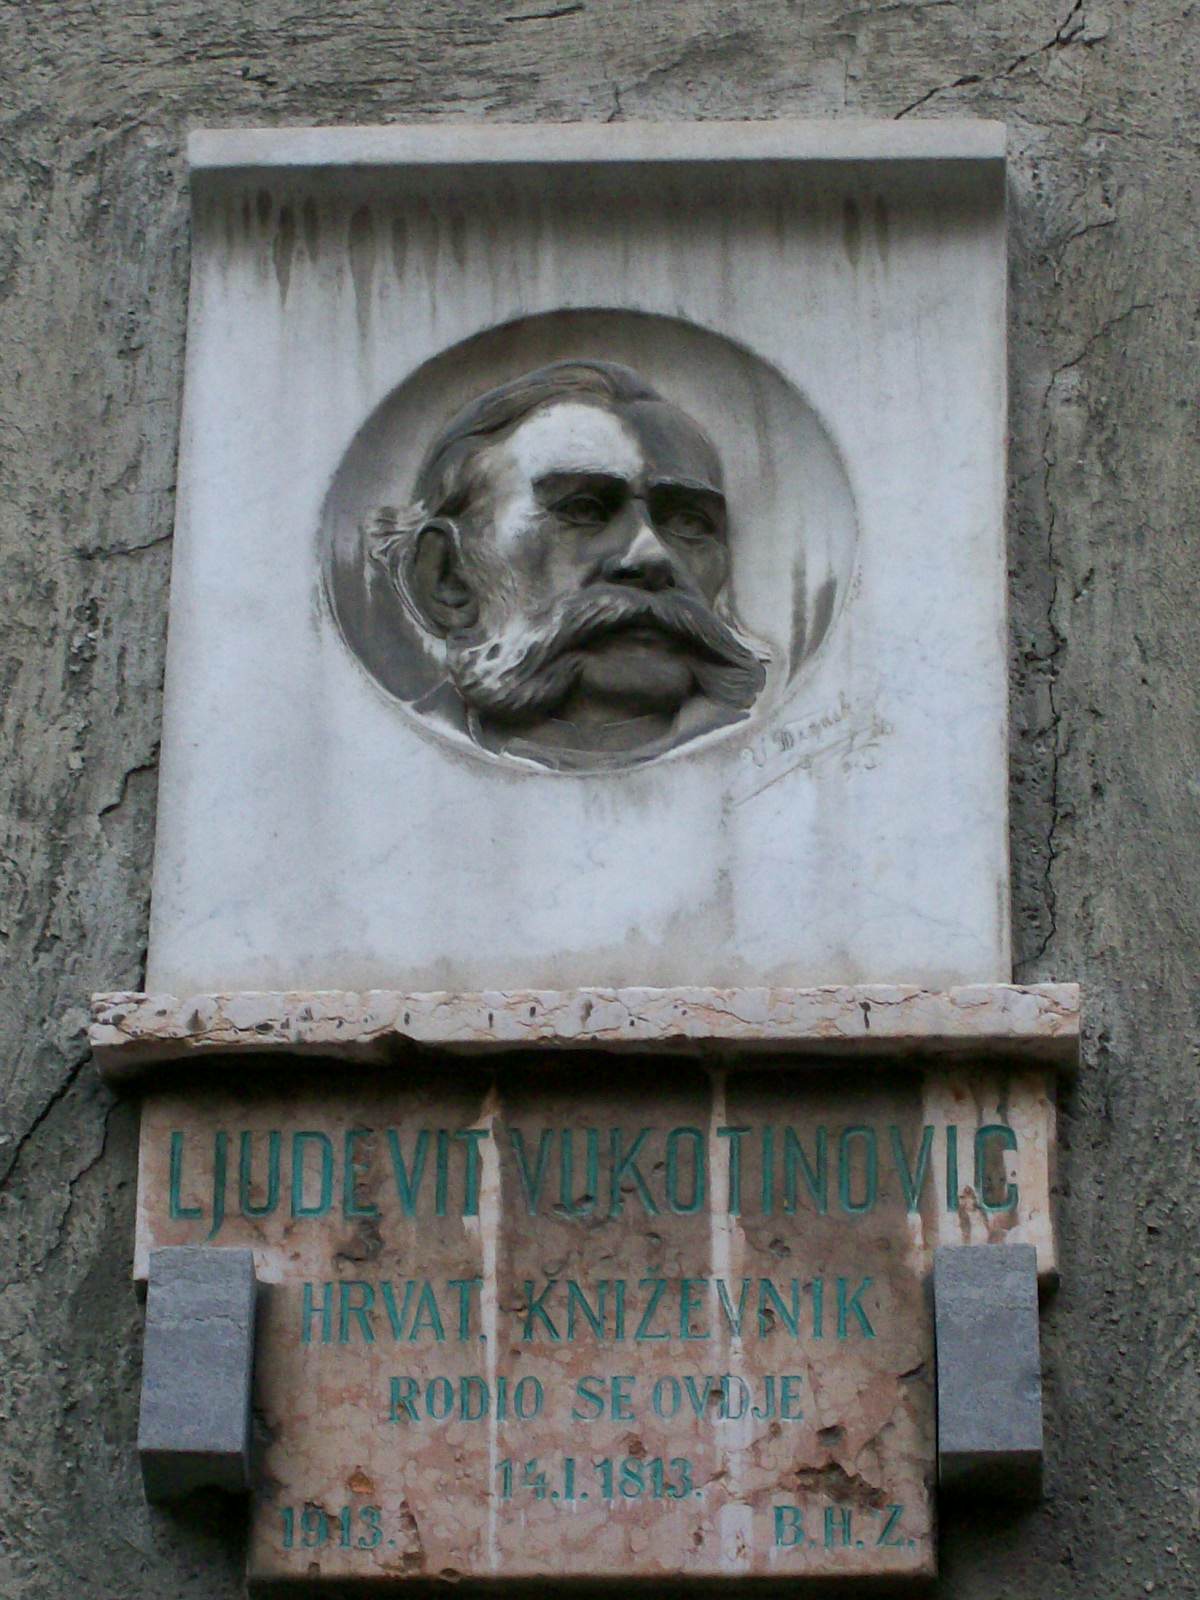 Ljudevit Vukotinović